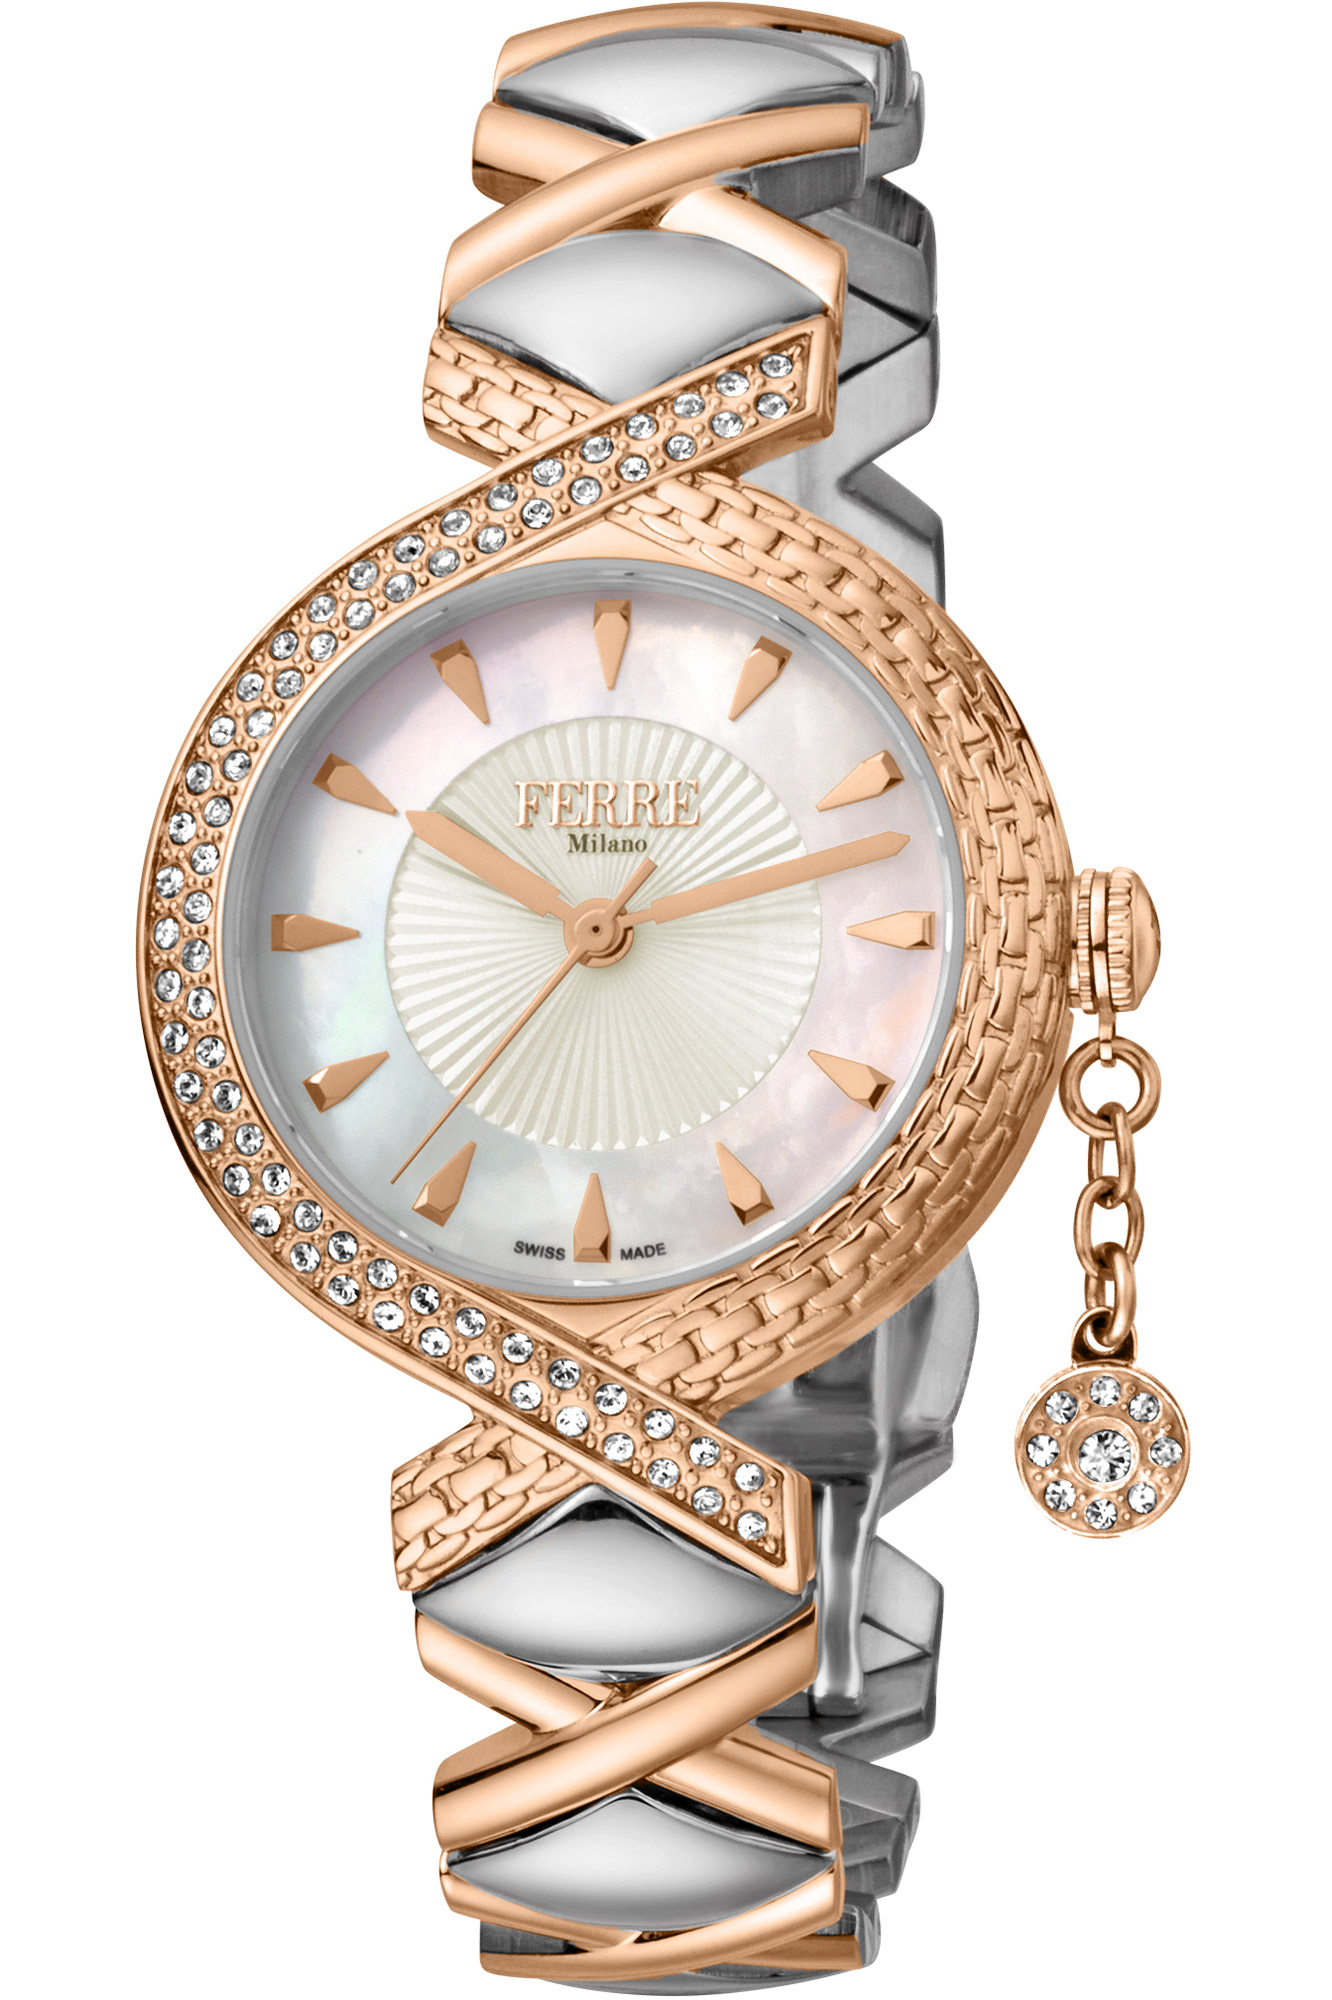 Reloj Ferrè Milano Lady fm1l122m0061